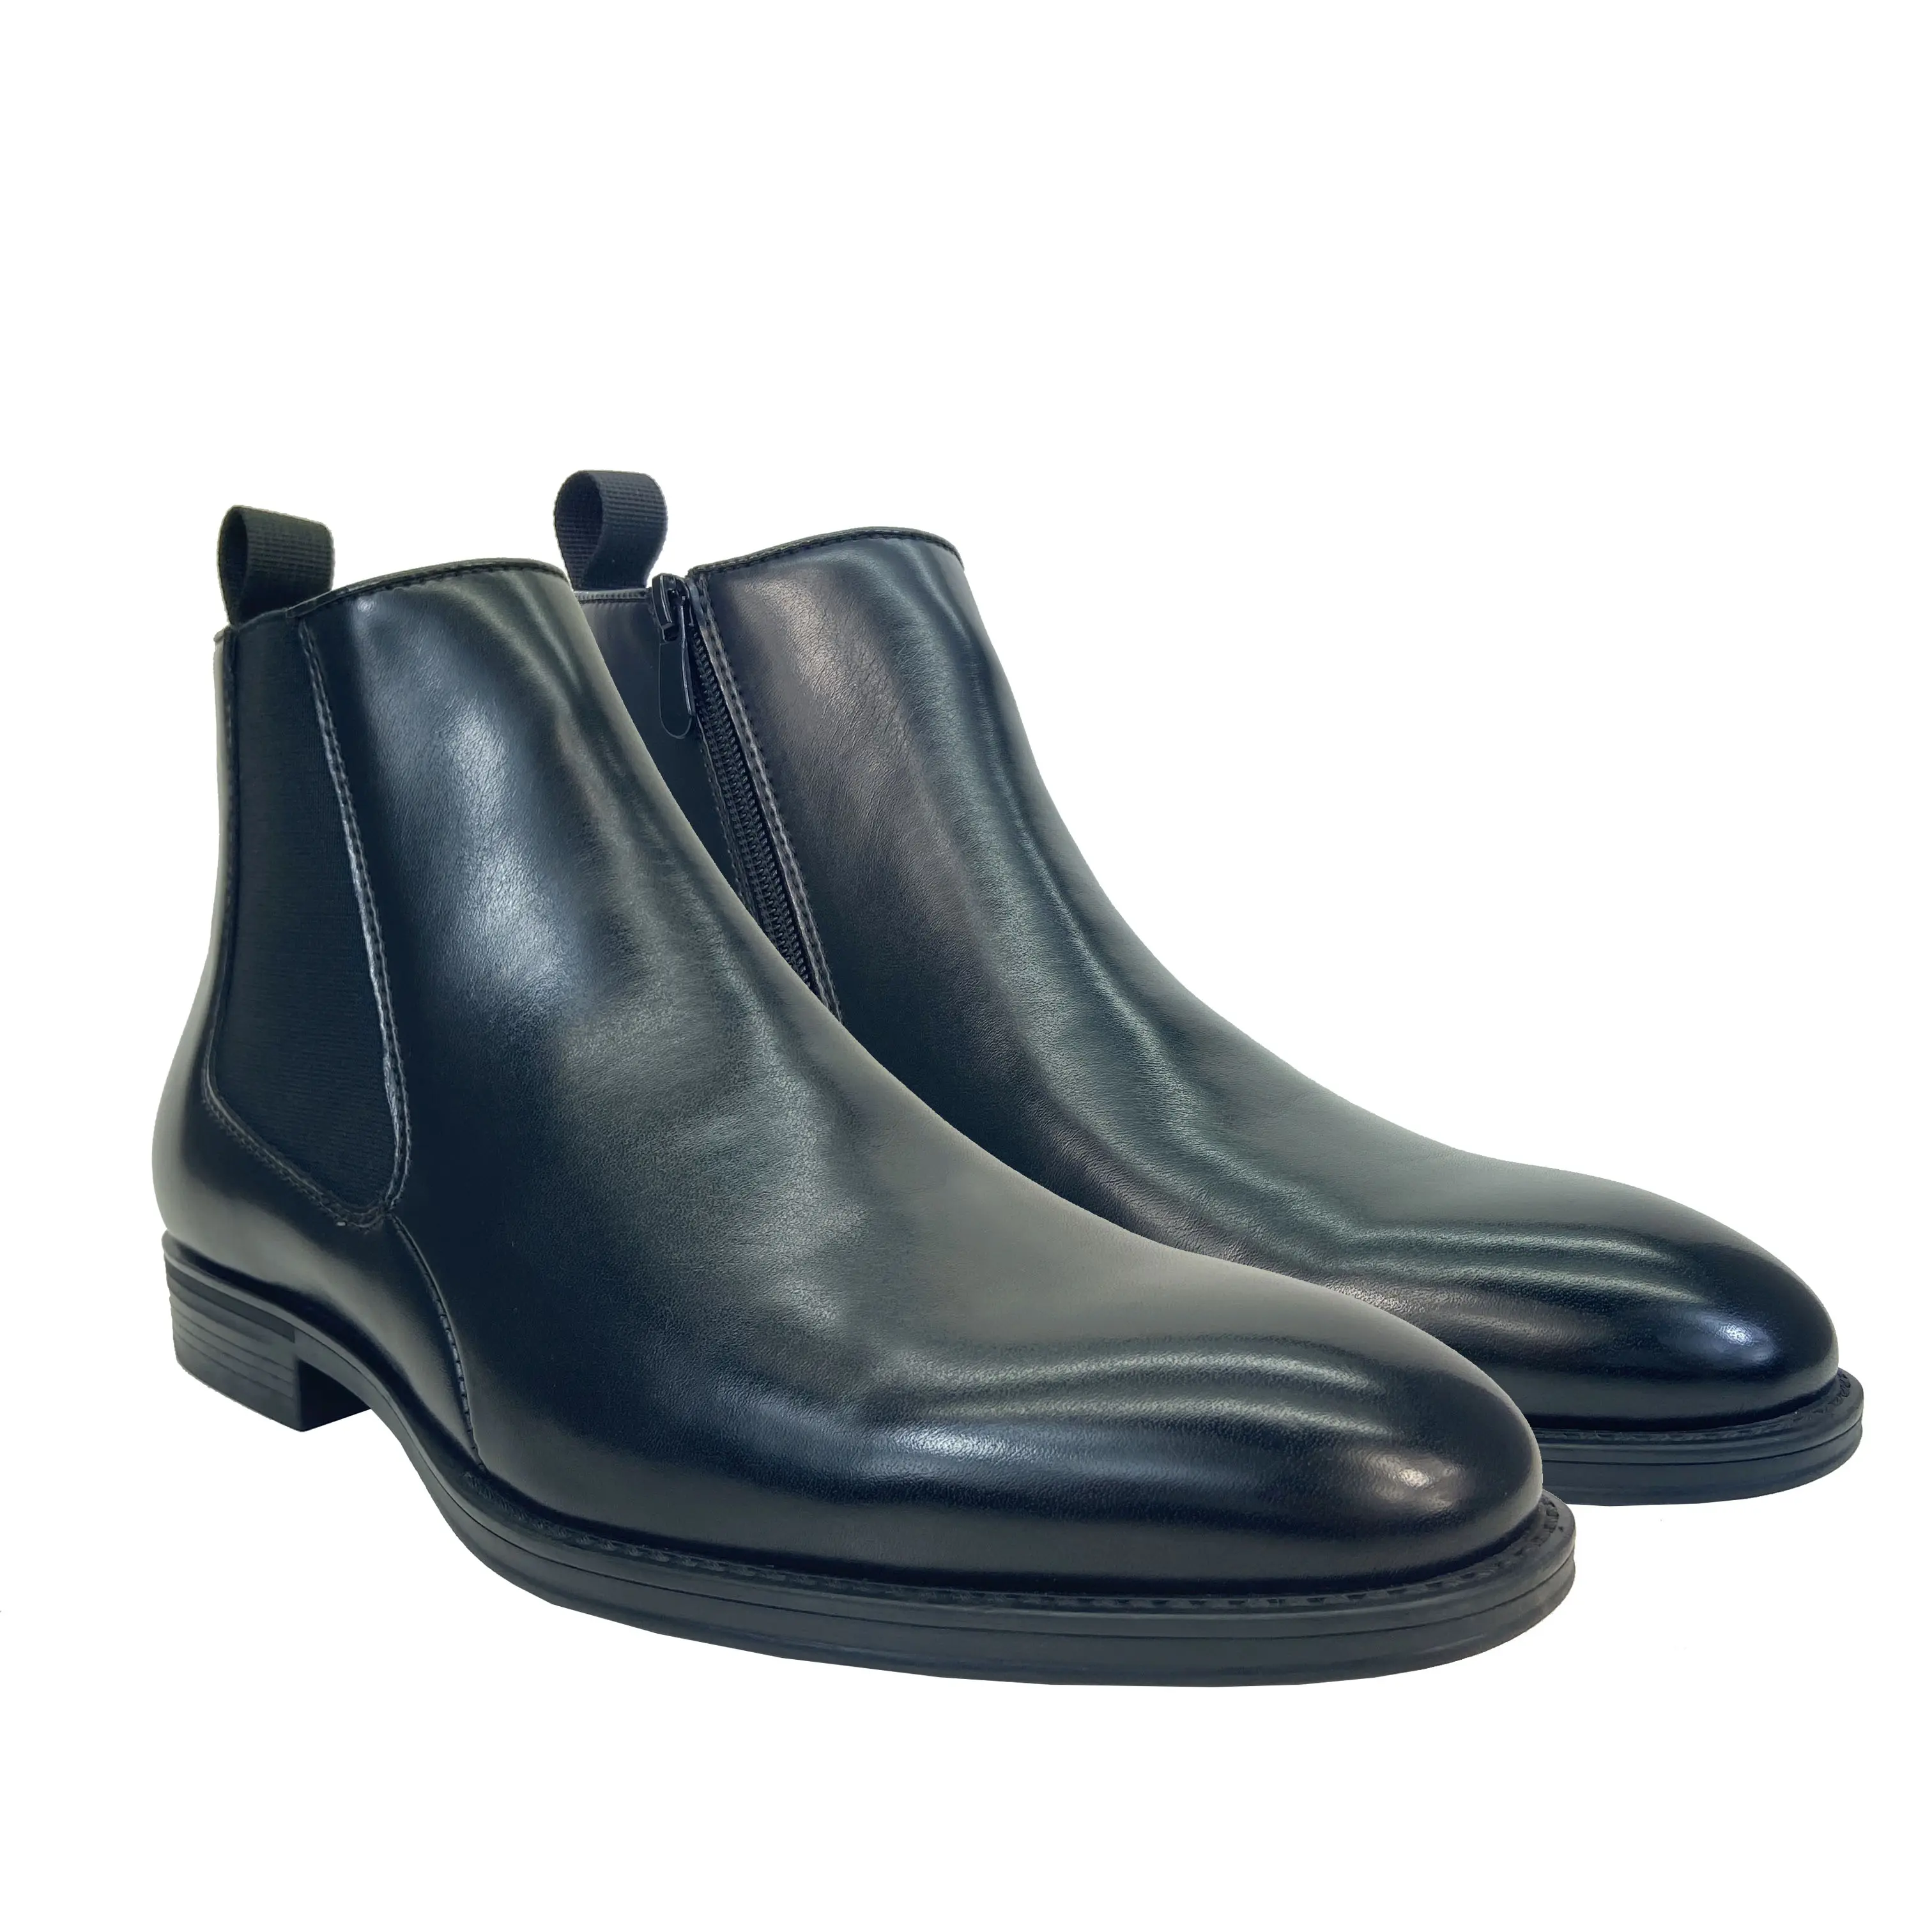 New Business Classic Kleid PU Schuhe Chelsea Stiefel schwarze Schuhe für Männer schlüpfen auf